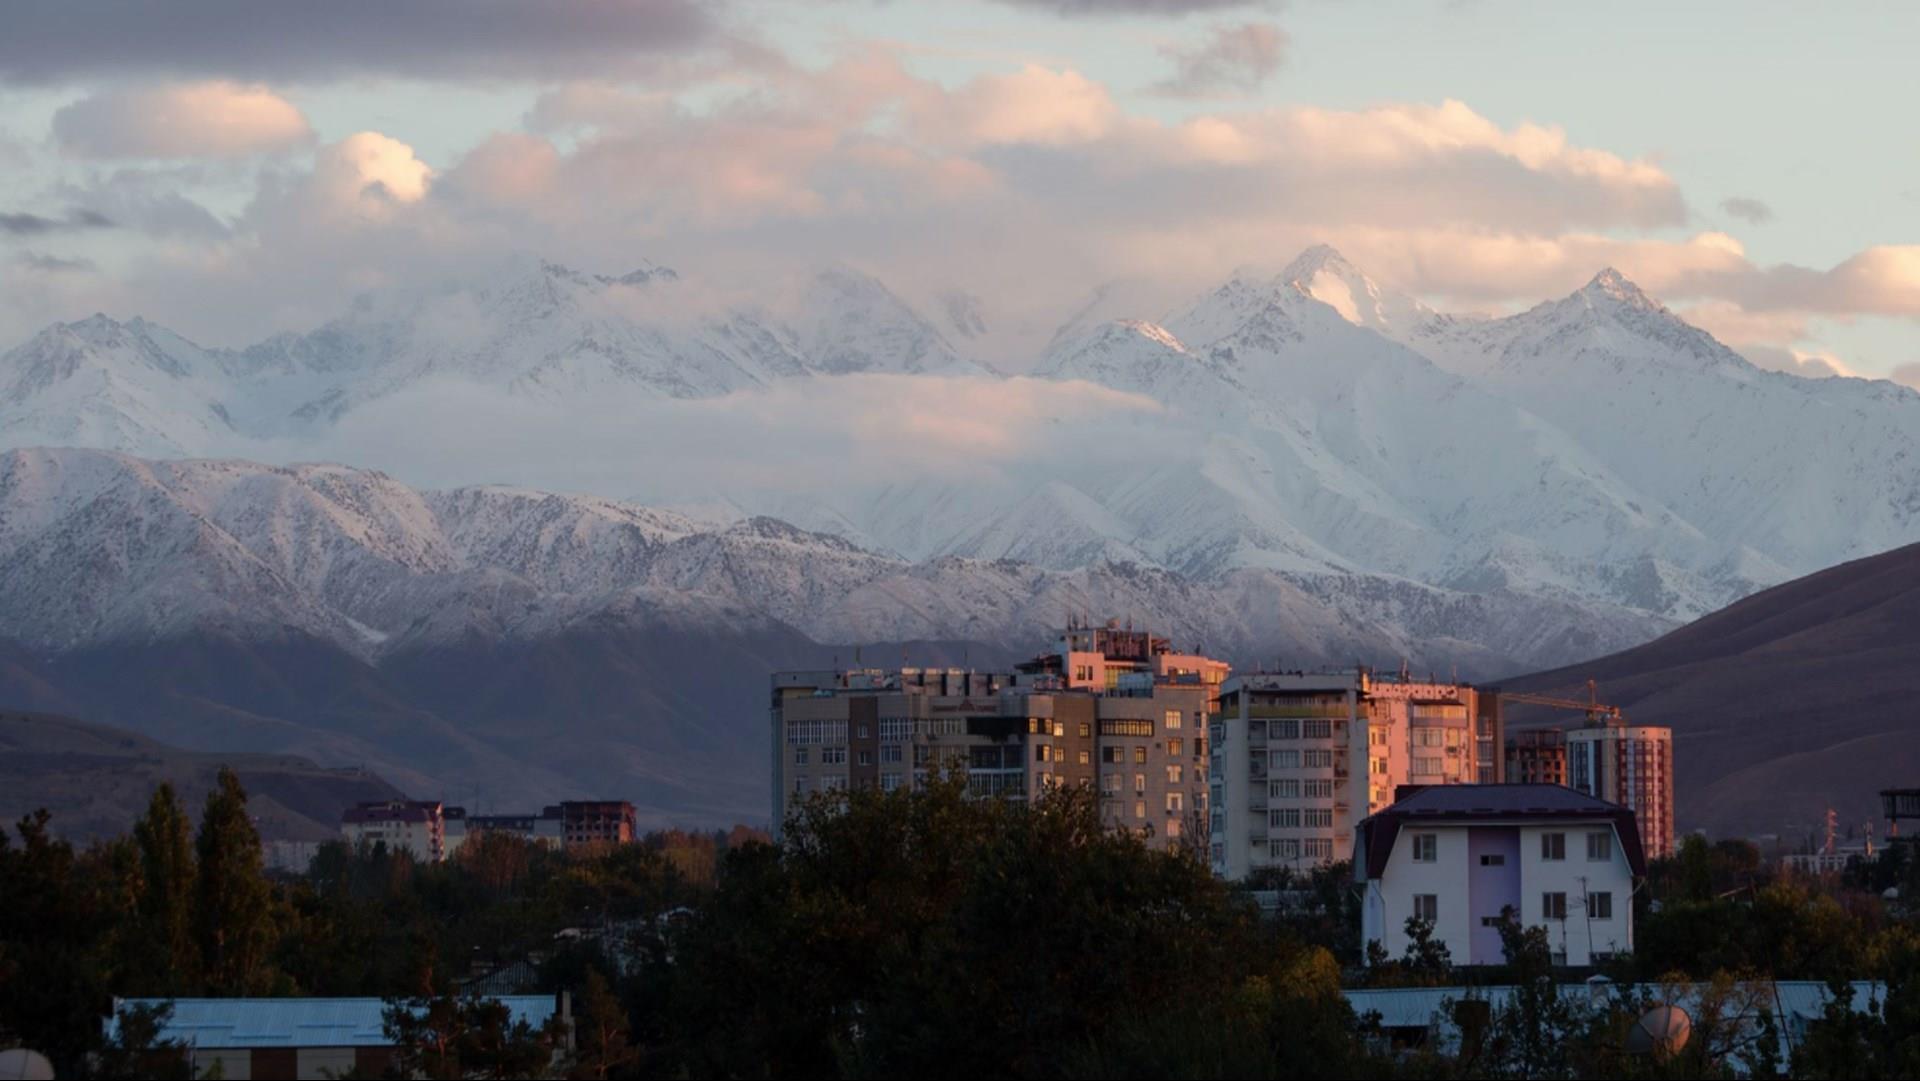 Discover Kyrgyzstan in Bishkek, KG